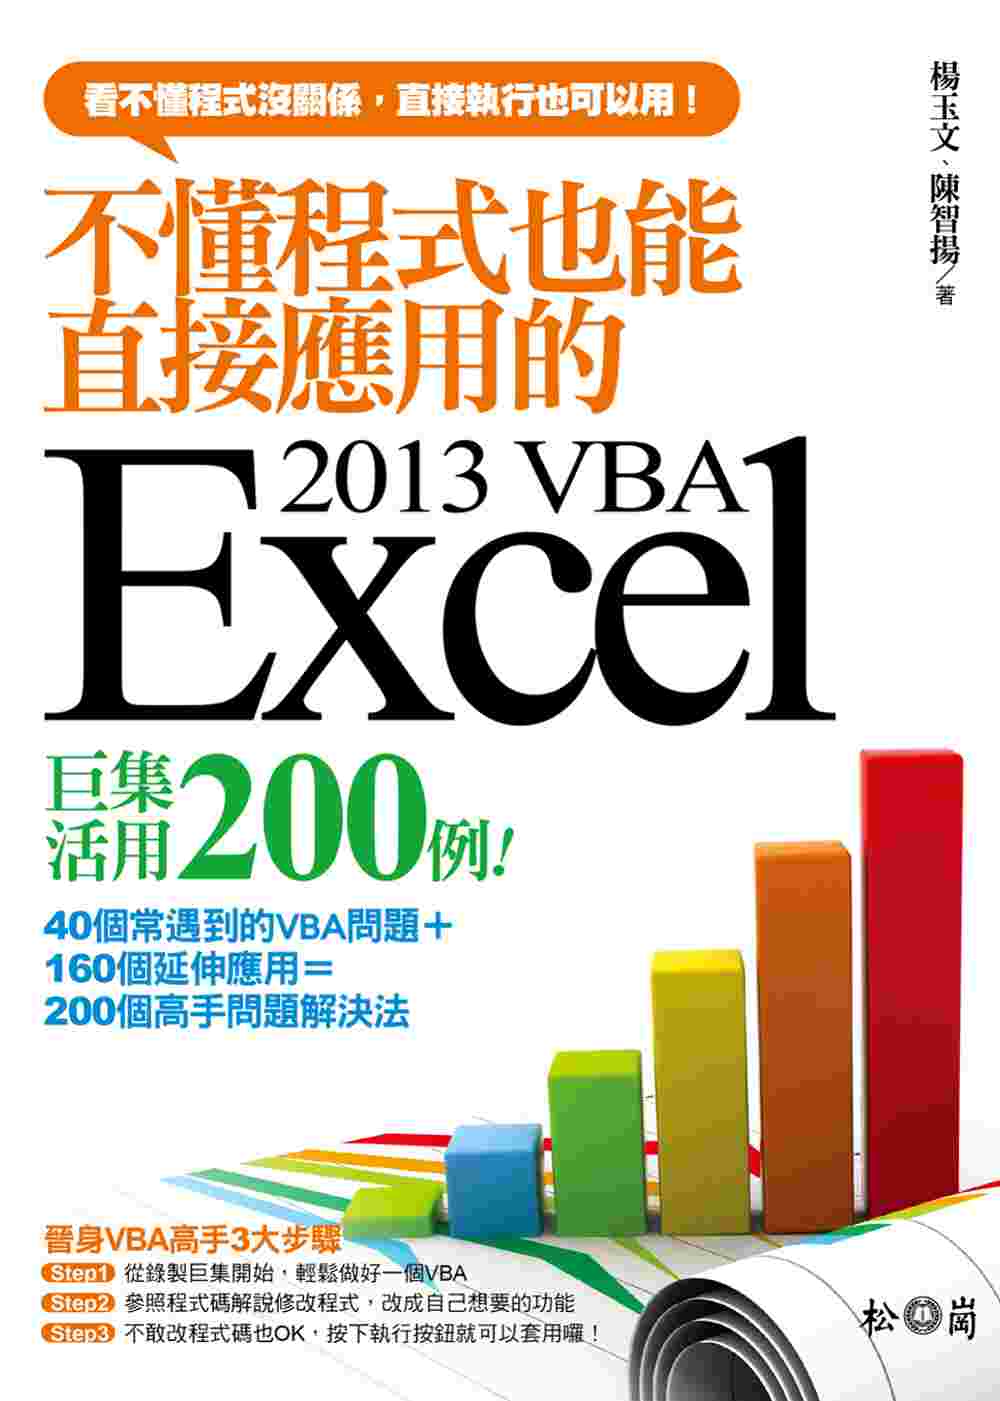 不懂程式也能直接應用的Excel 2013 VBA巨集活用200例 (附CDx1)